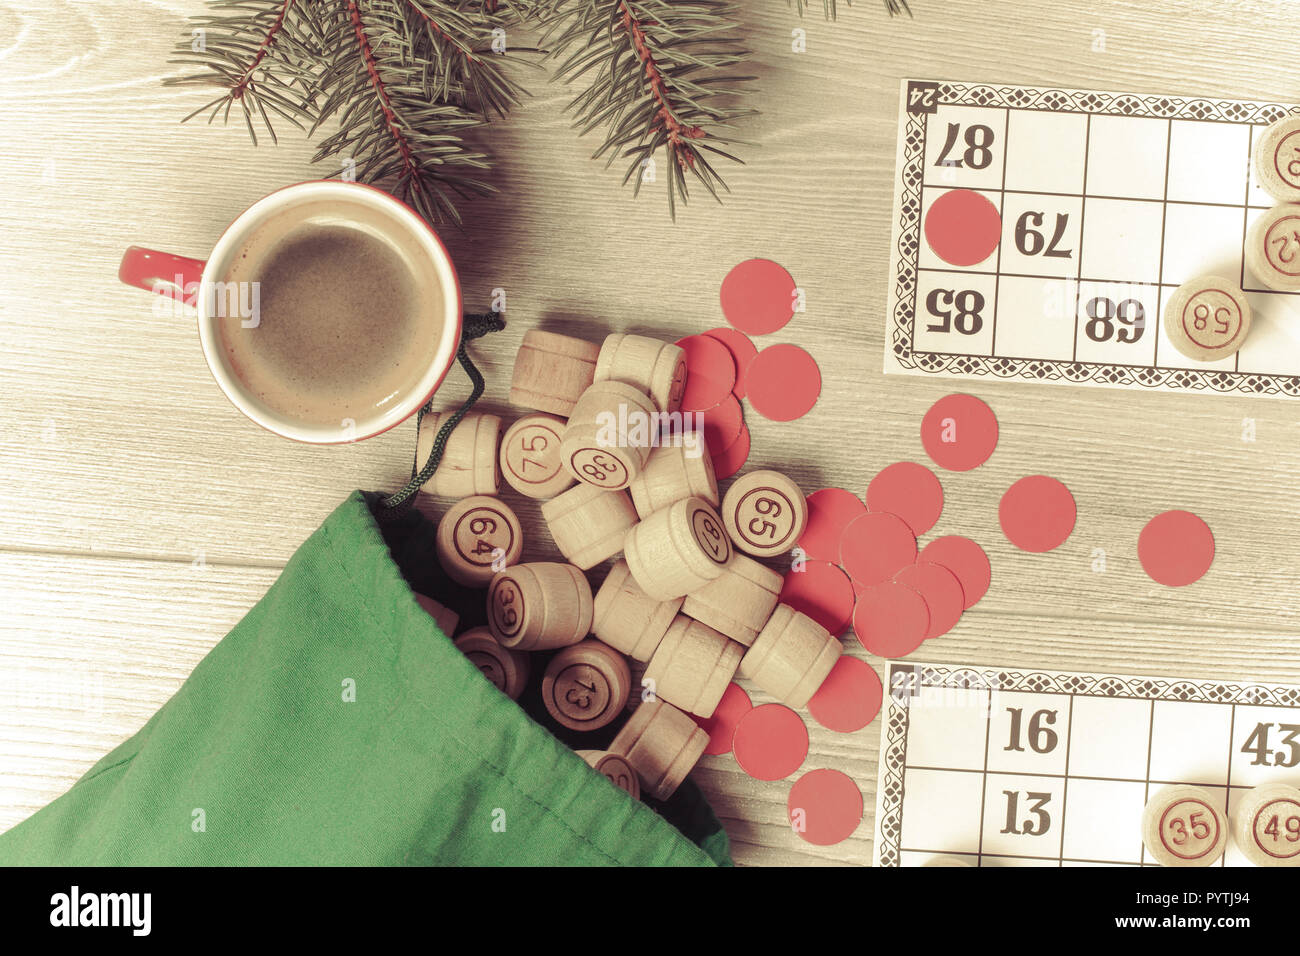 Board Game Lotto. Holz- lotto Fässer mit grün Beutel, Spielkarten, rote Chips und Tasse Kaffee, Weihnachten Tannenbaum Äste. Ansicht von oben. Farbe toning ef Stockfoto